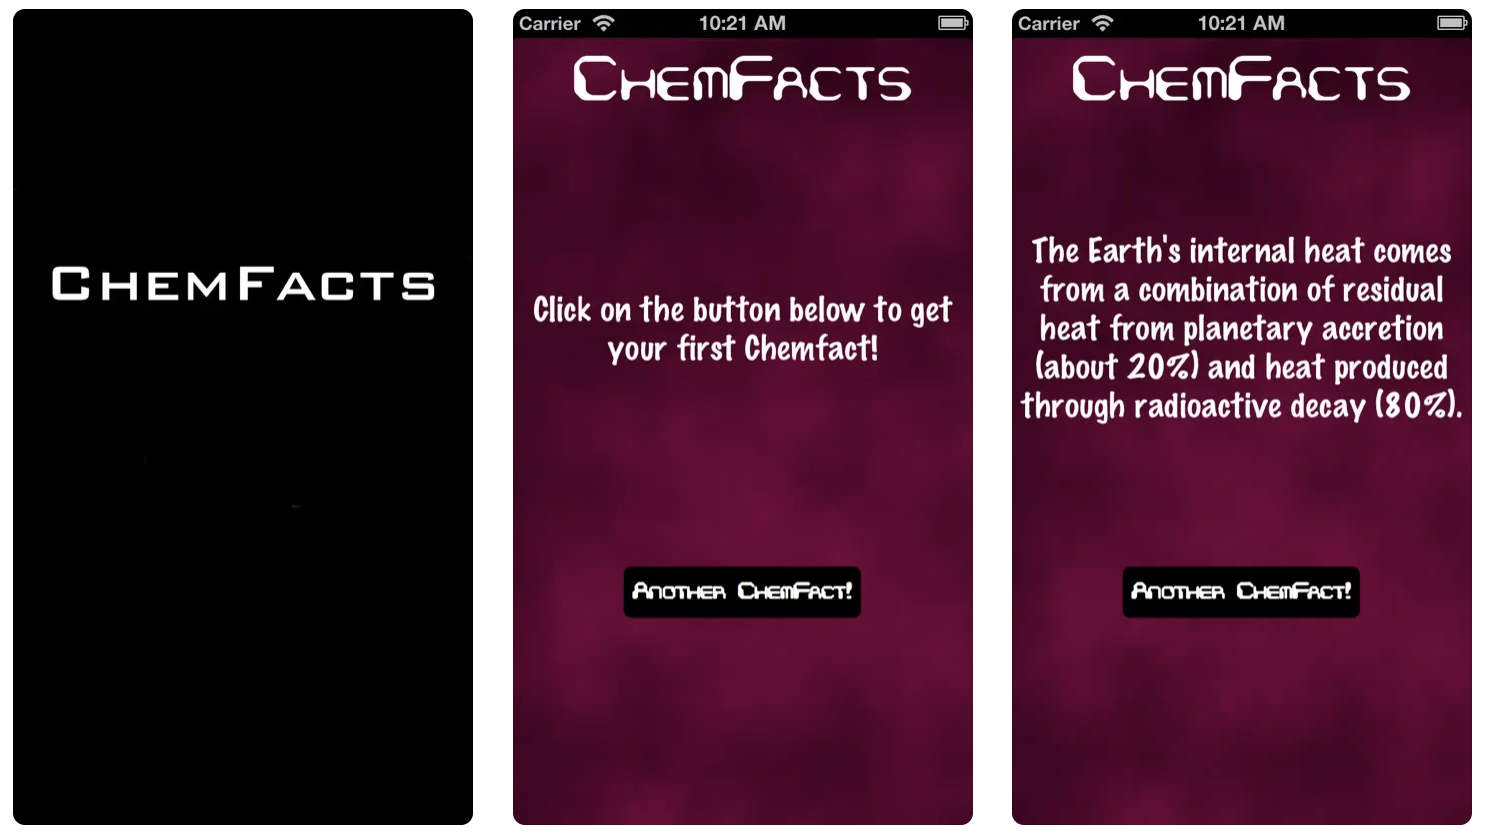 ChemFacts! Description